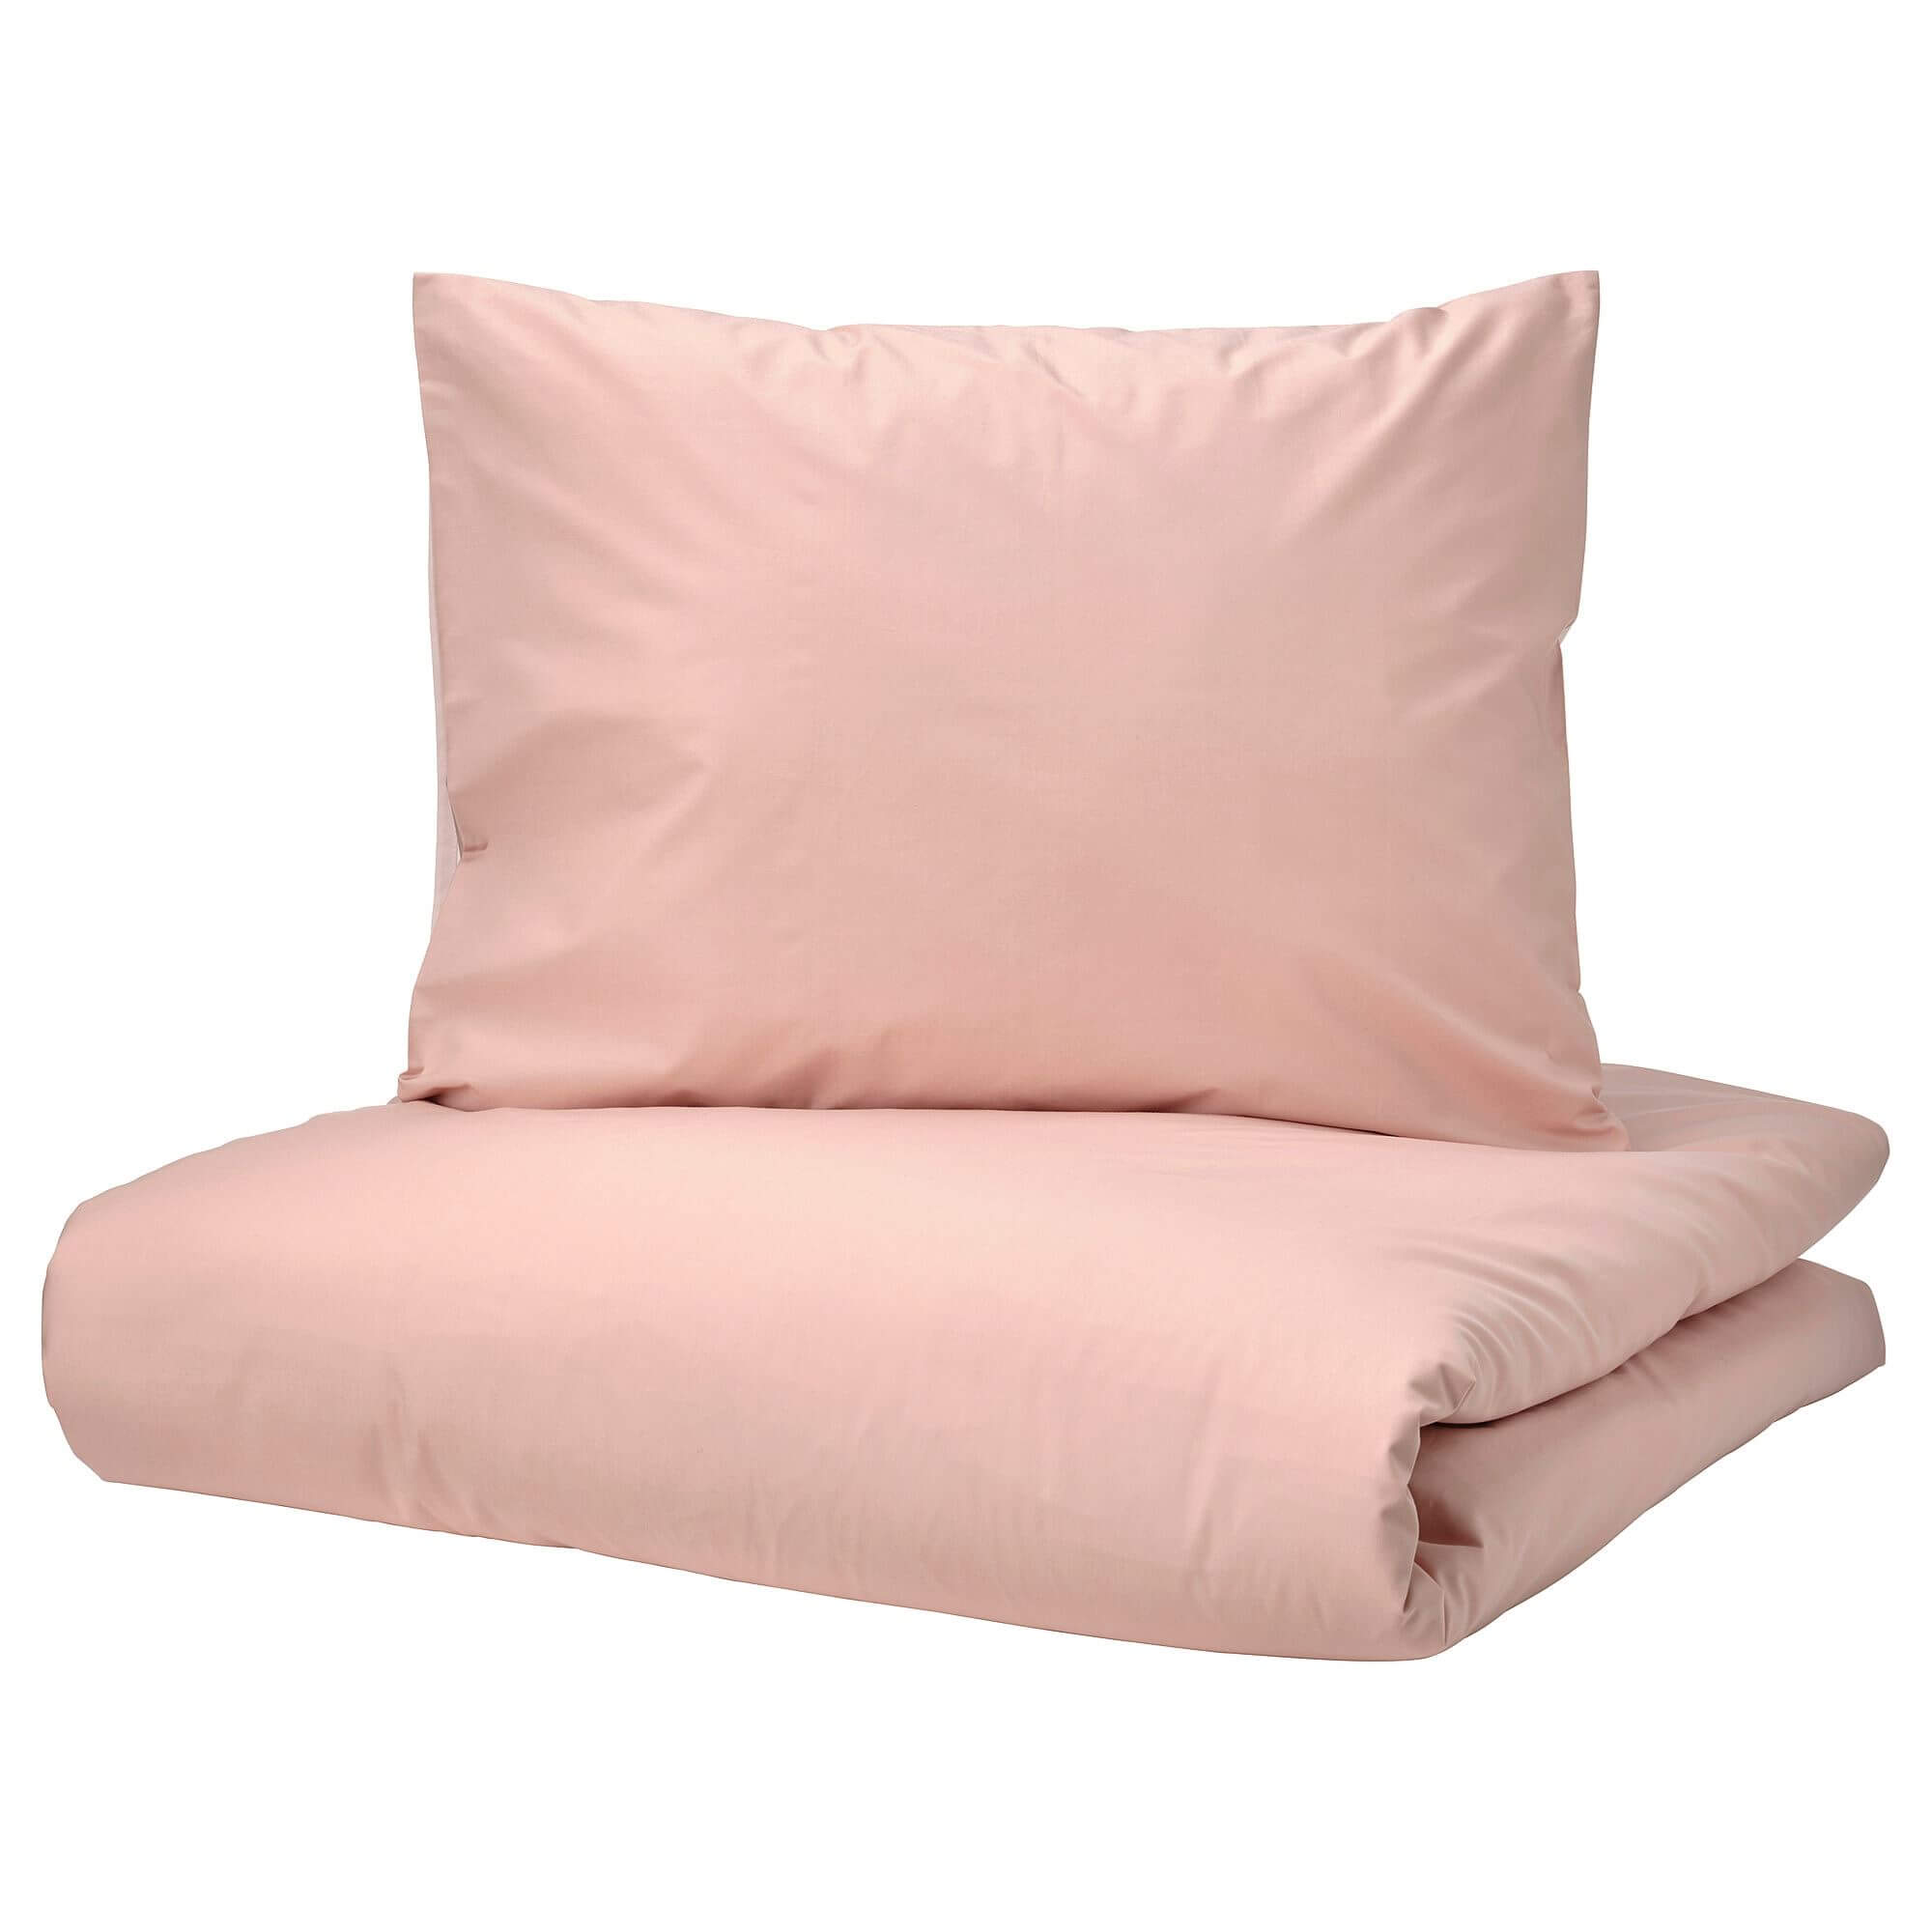 комплект постельного белья ikea angslilja 2 предмета серый Комплект постельного белья Ikea Strandtall, 3 предмета, розовый